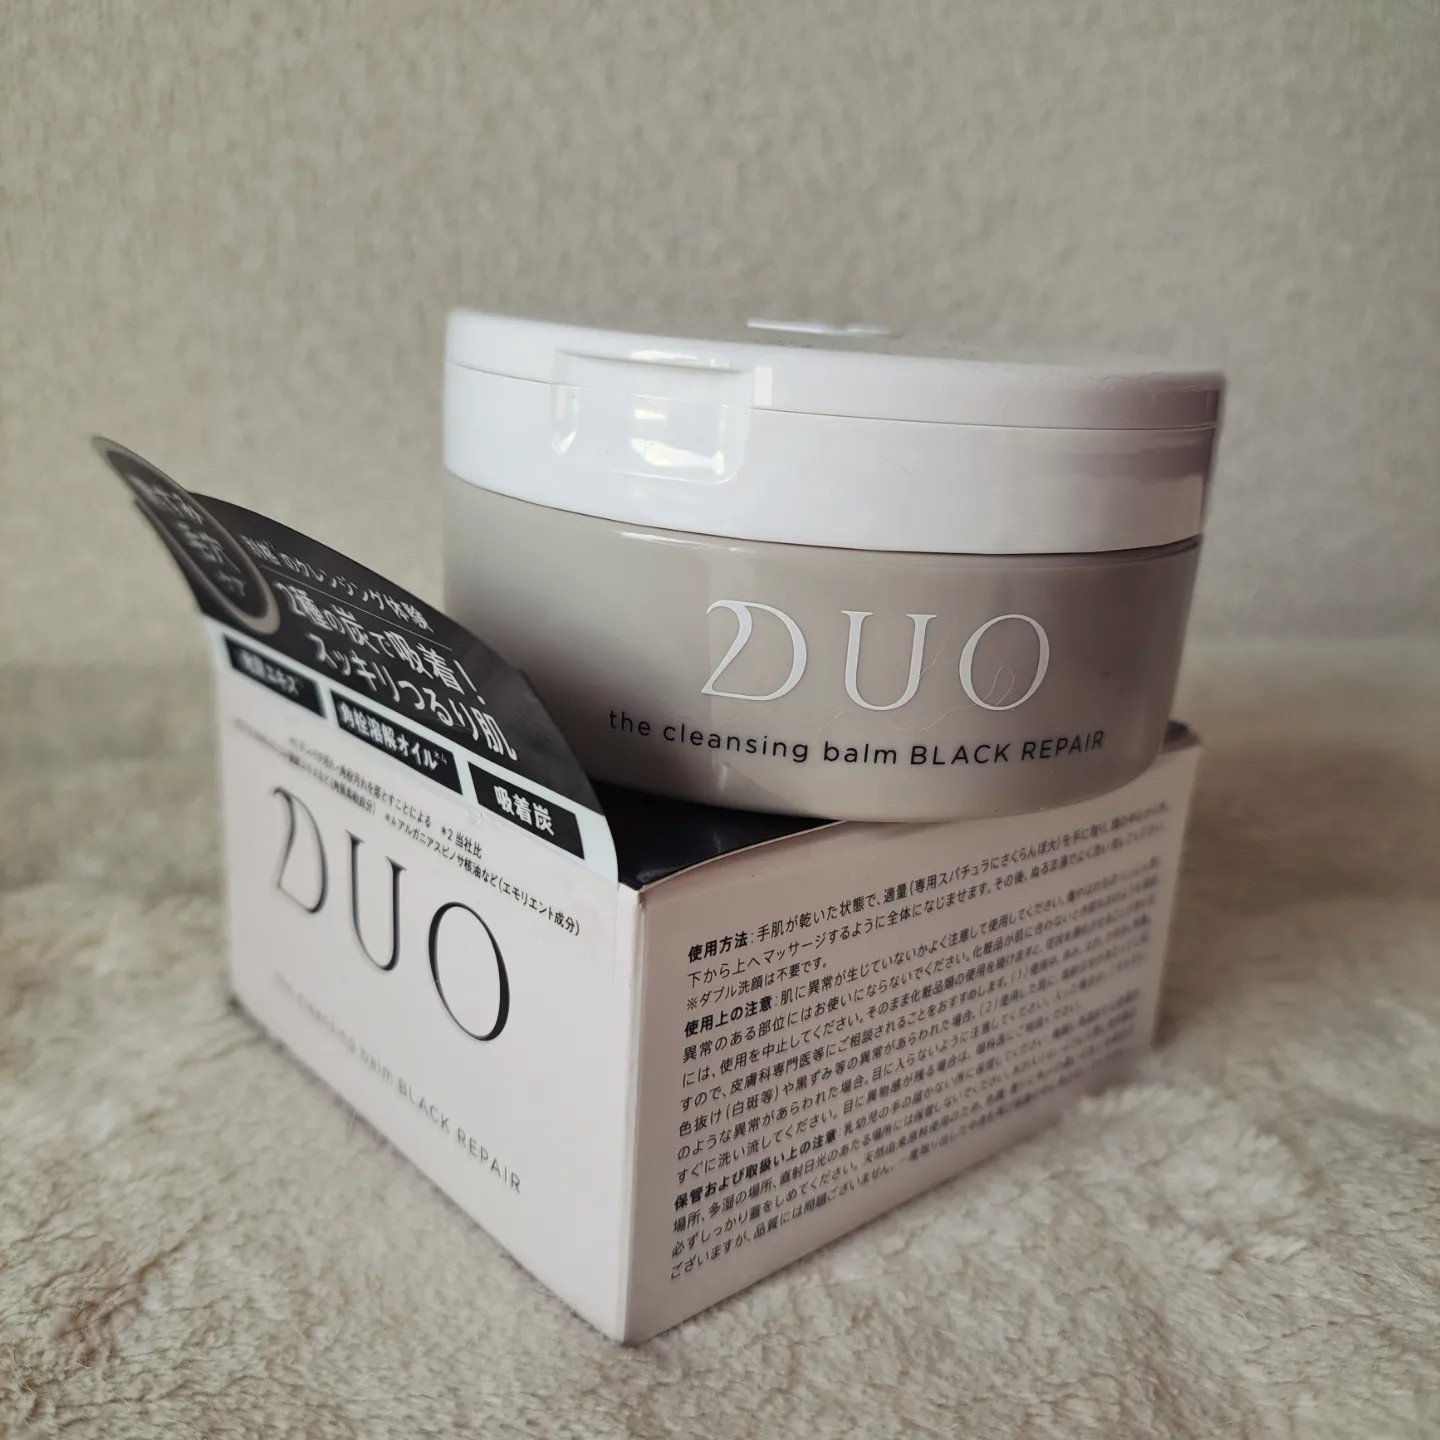 DUO(デュオ) / ザ クレンジングバーム ブラックリペアの公式商品情報